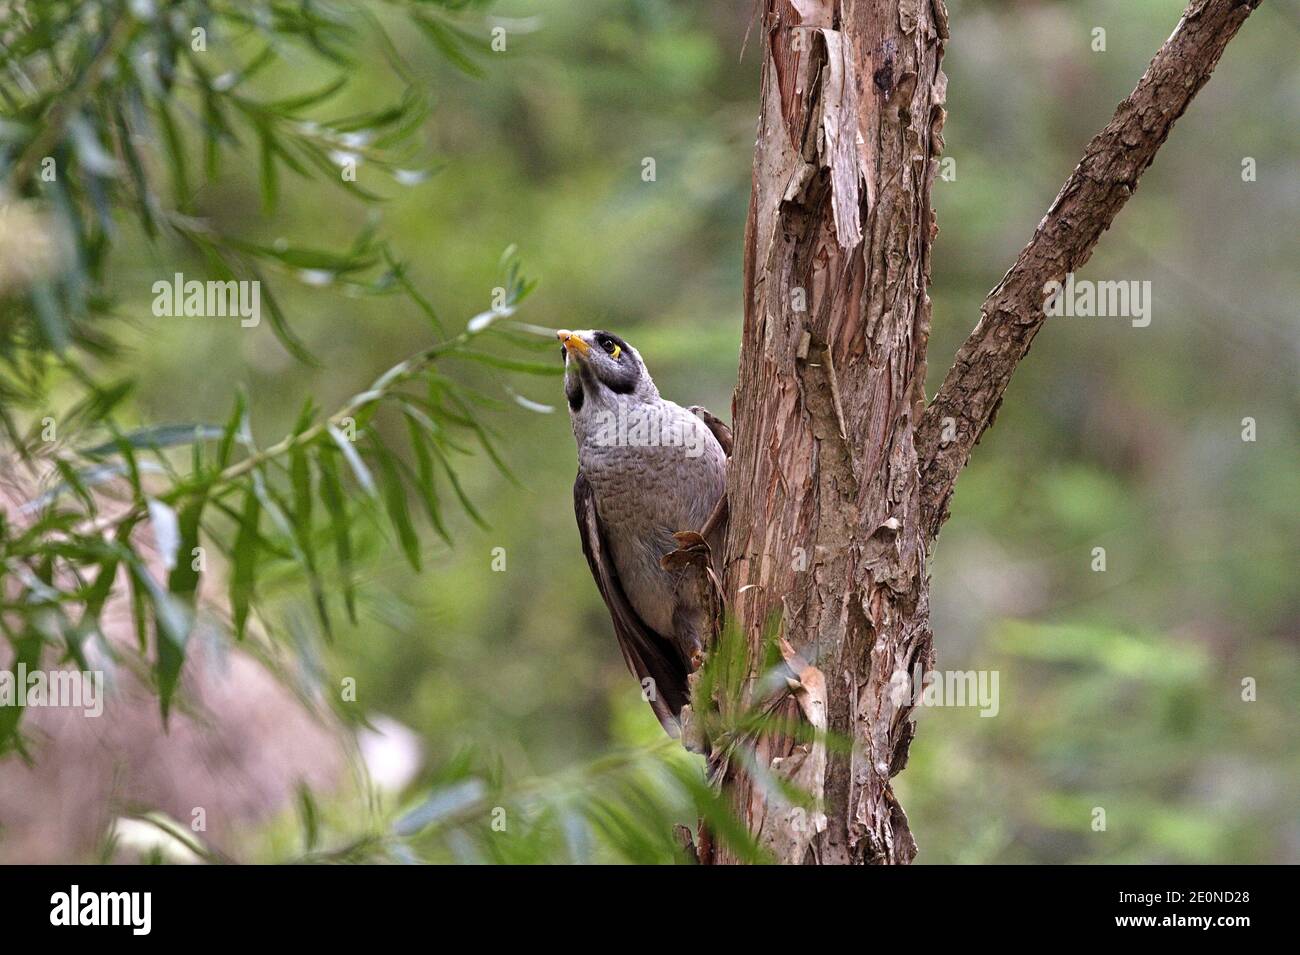 Australian bird the noisy miner or Manorina melanocephala clinging to a tree branch. Stock Photo